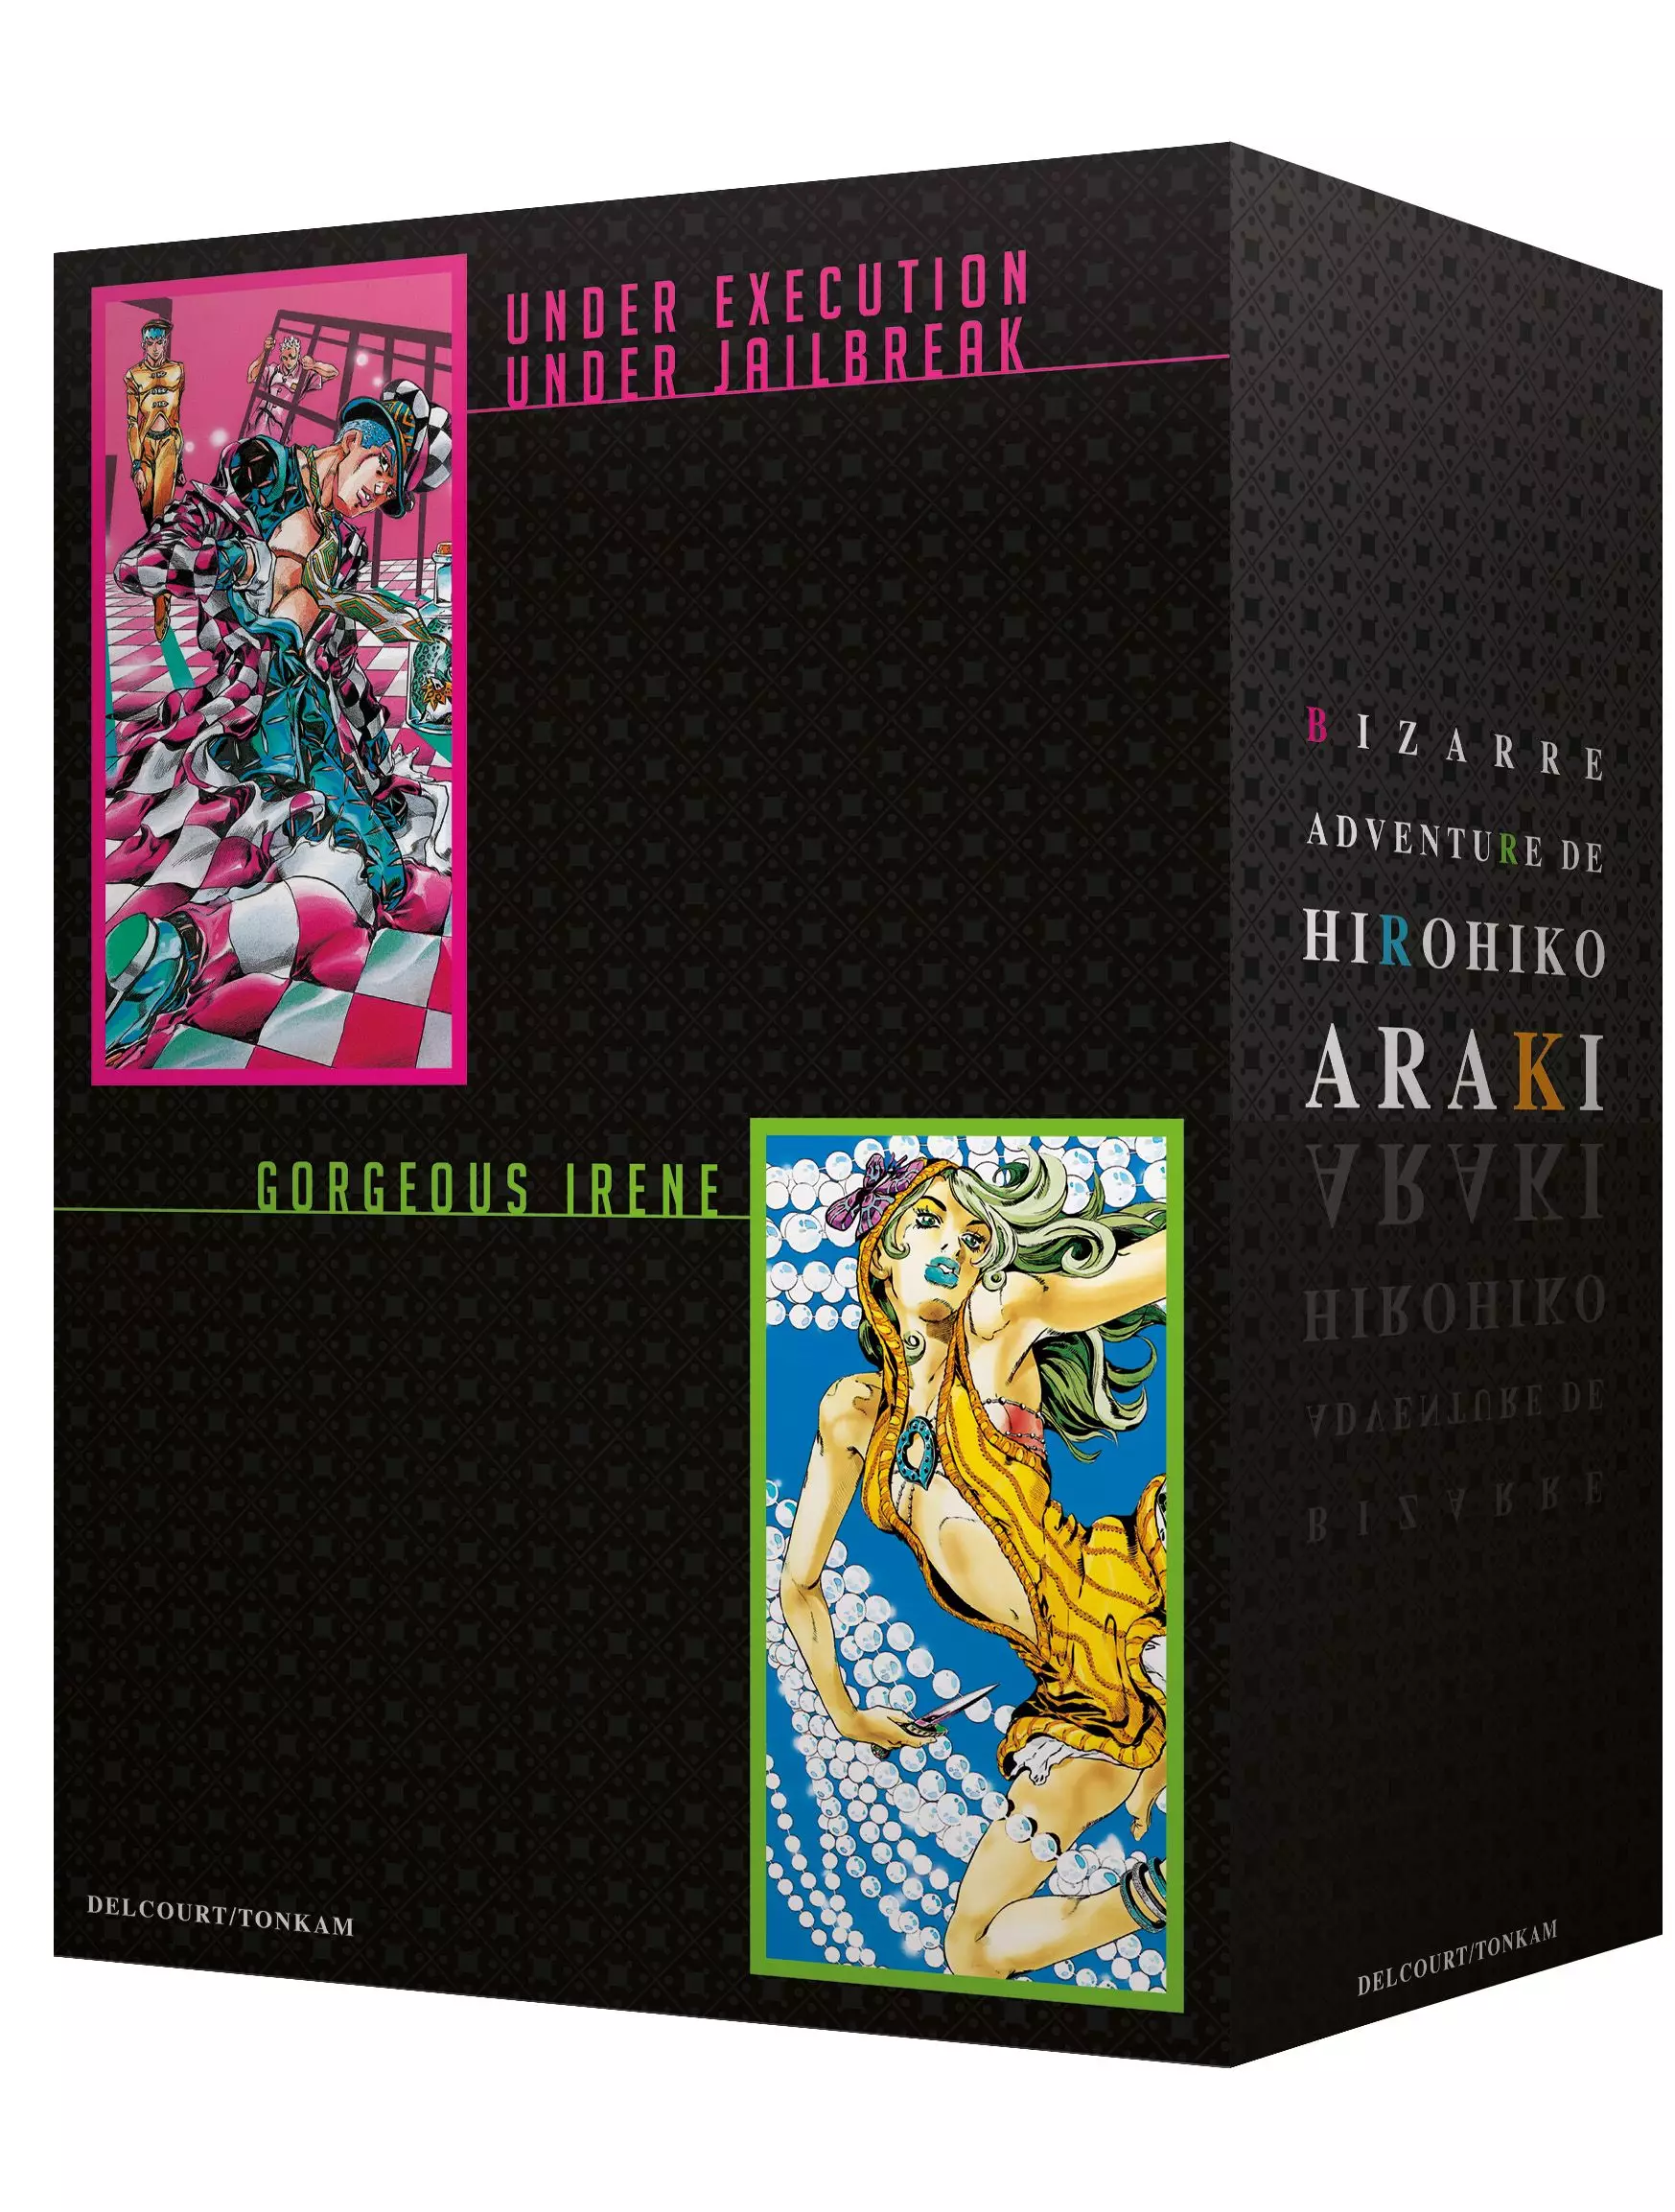 Manga - Bizarre aventure de Hirohiko Araki